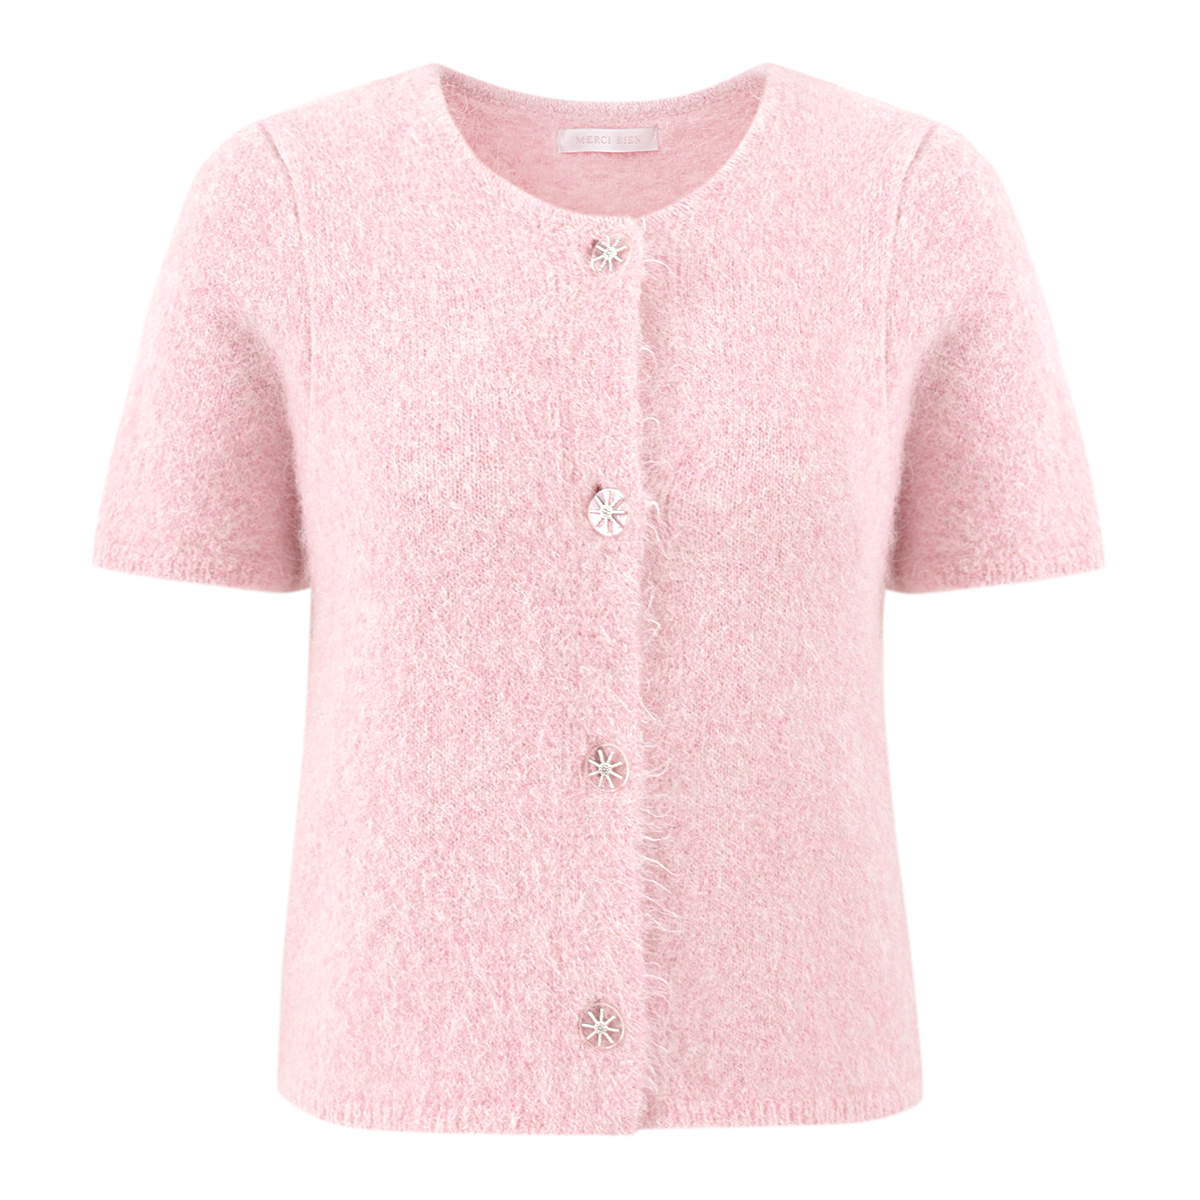 Briller knit (pink)